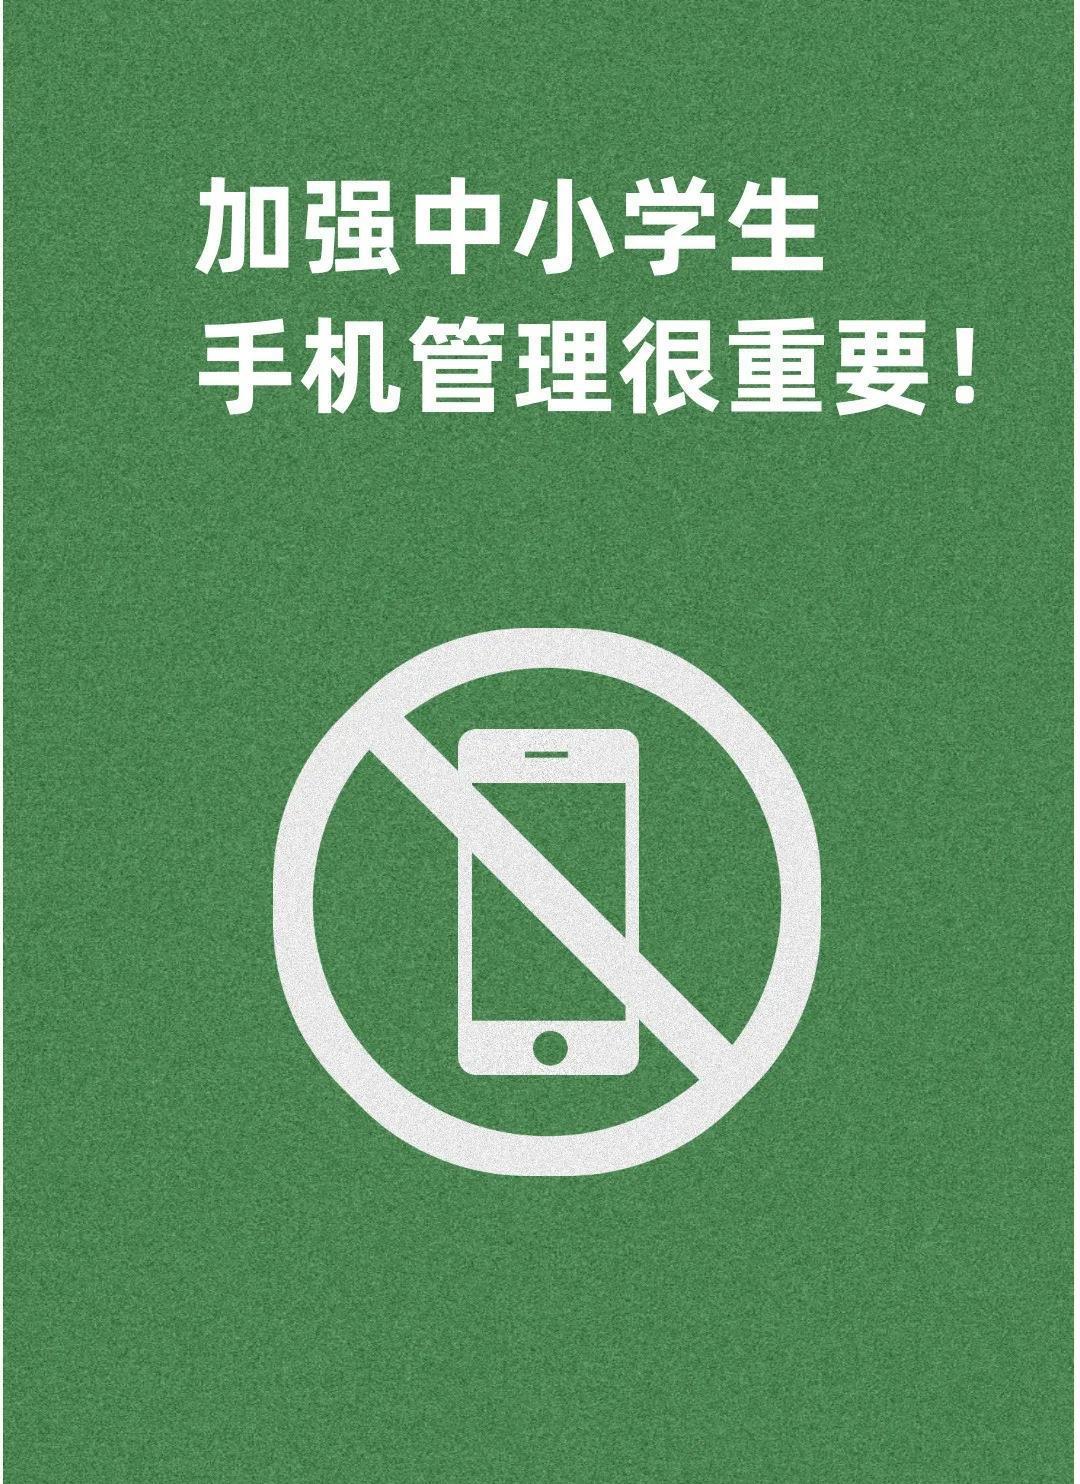 禁止手机进校园海报图片